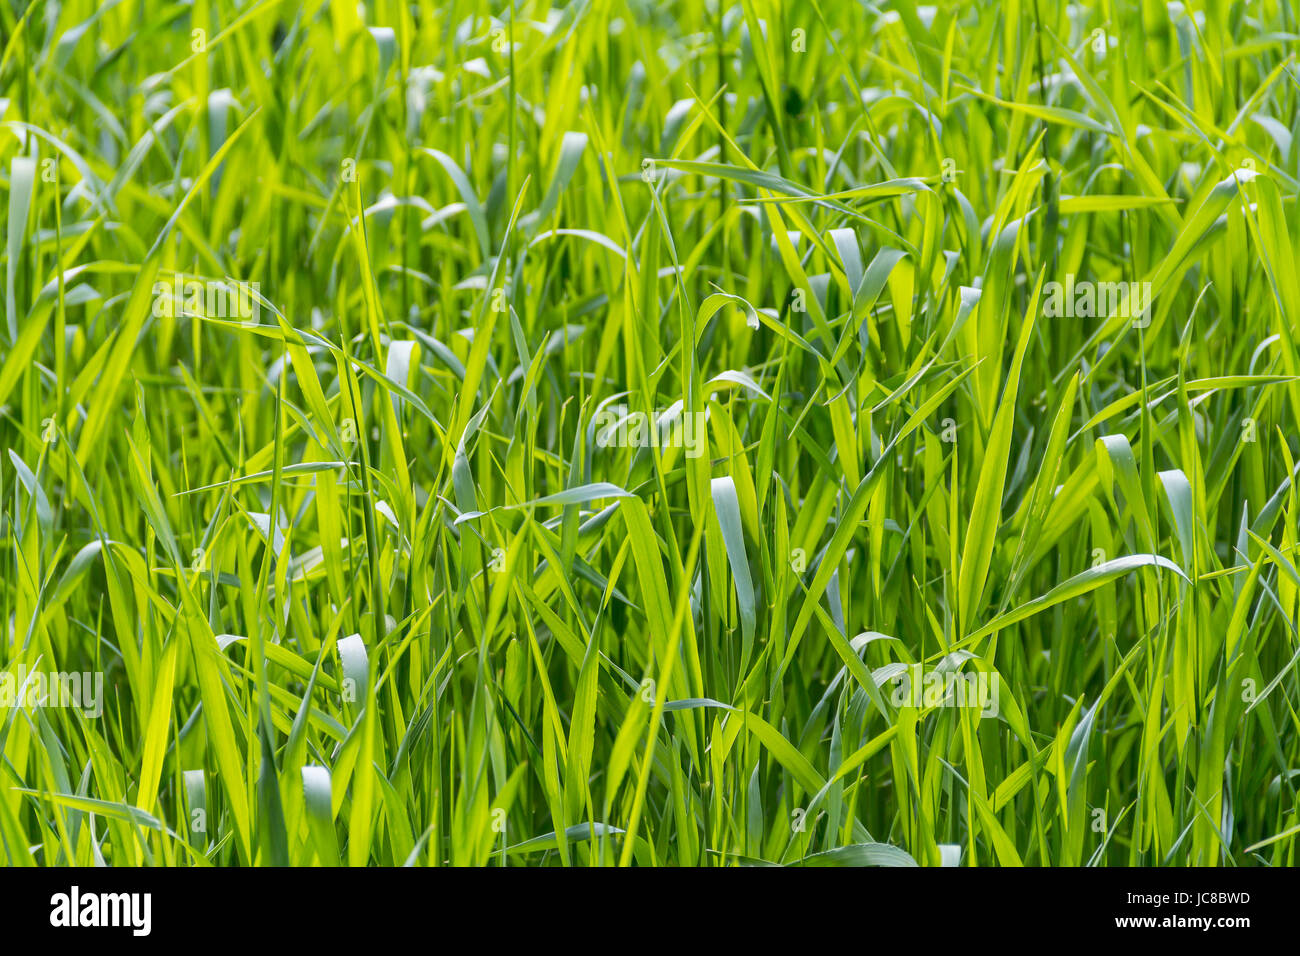 sunny illuminated full frame grass closeup Stock Photo